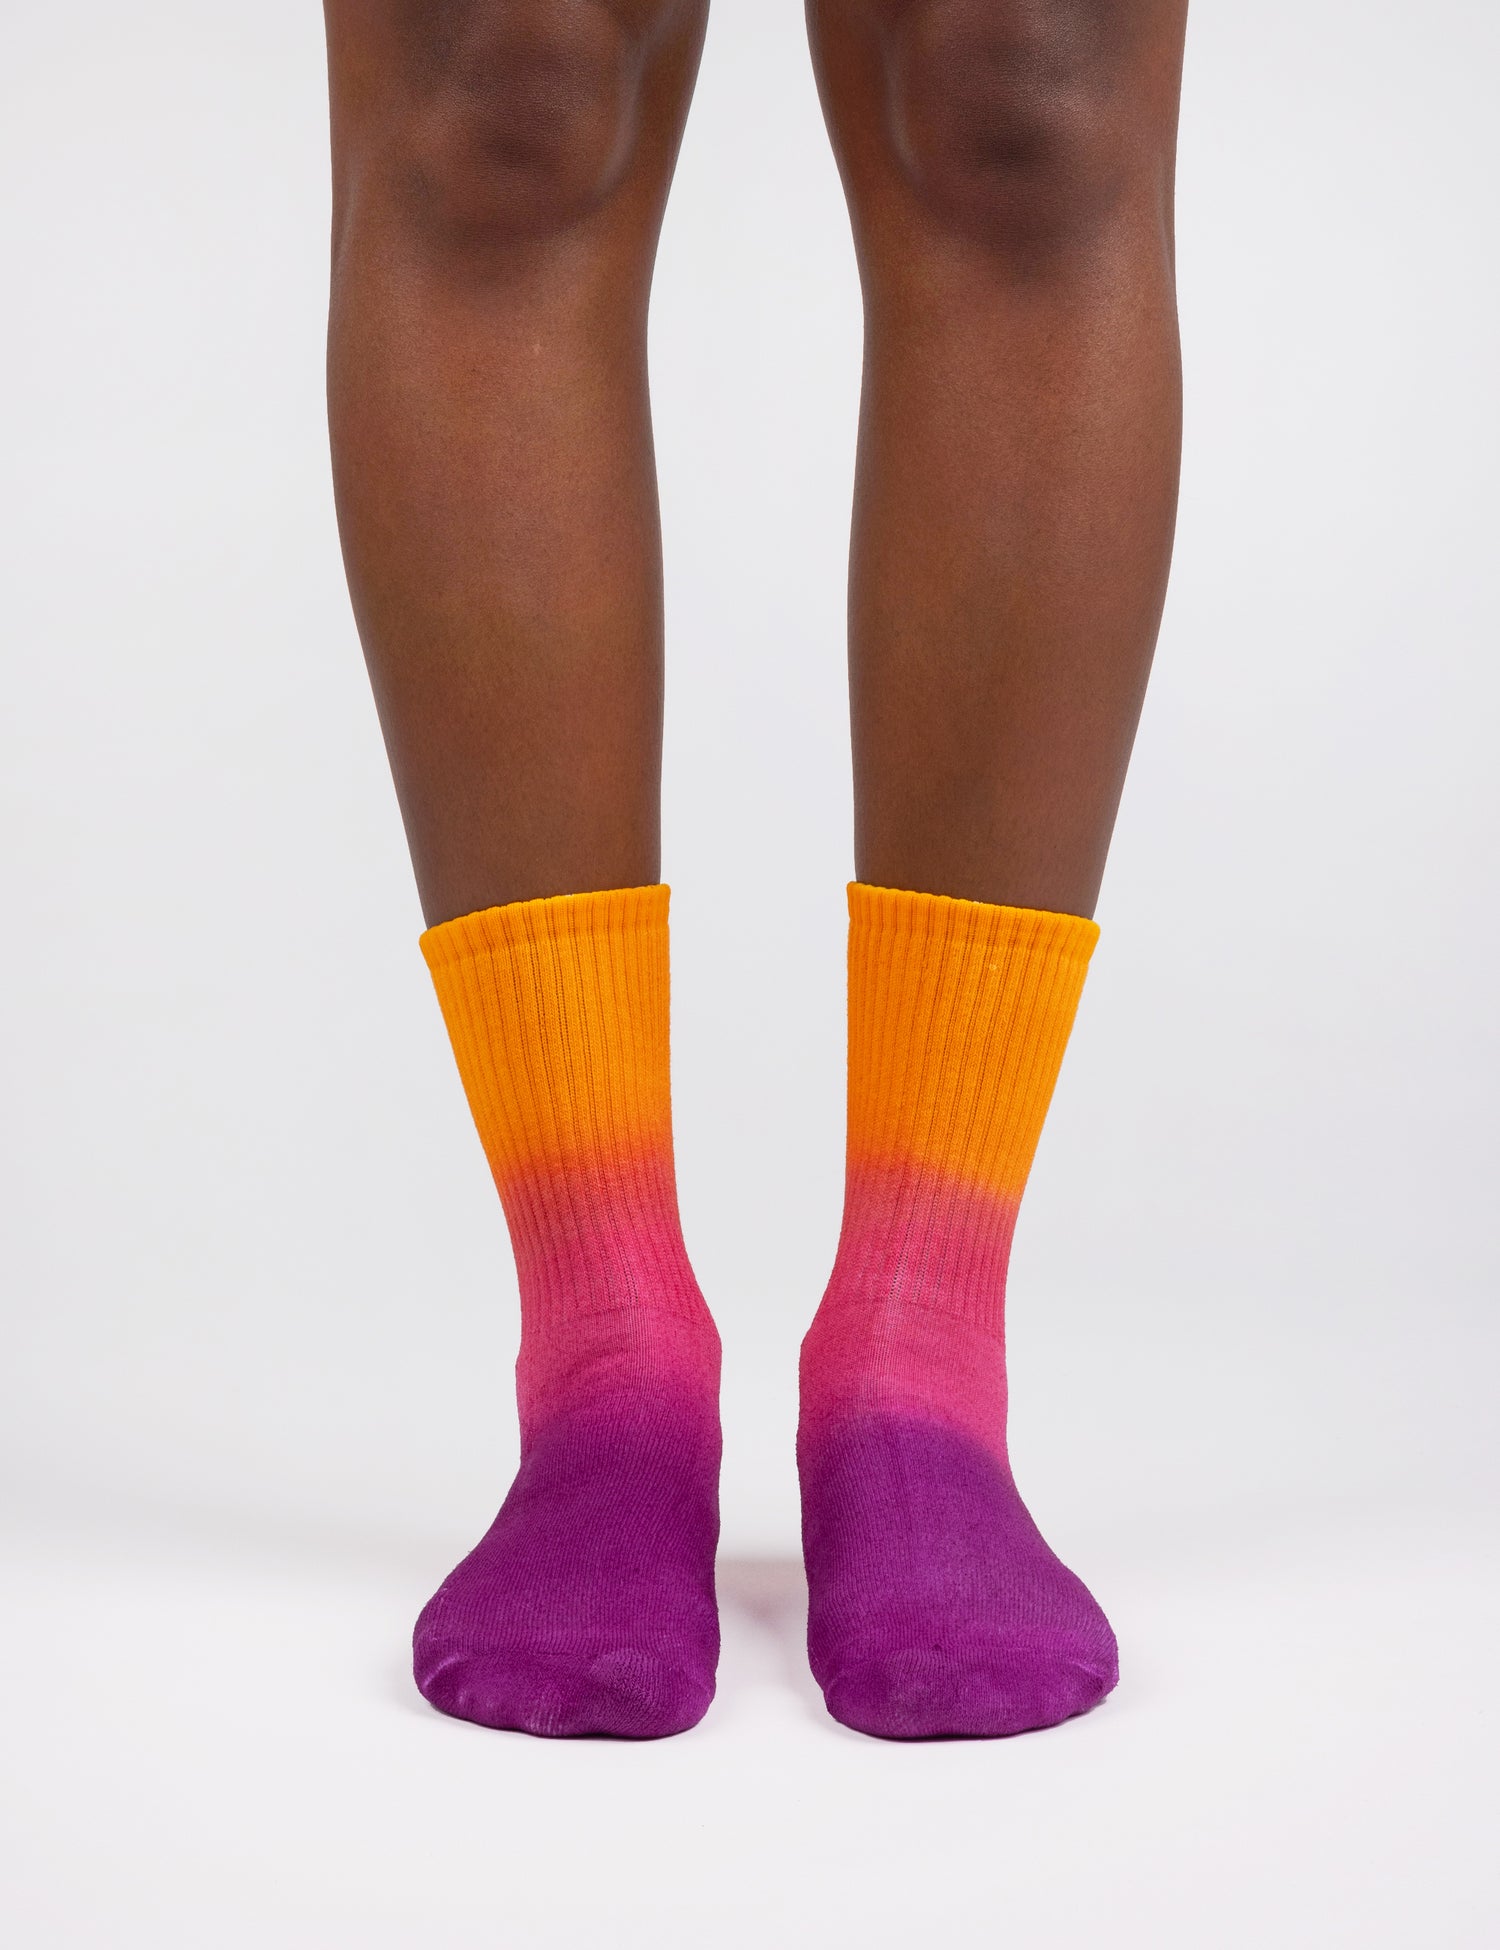 Image of feet wearing socks in gradient colors orange pink purple